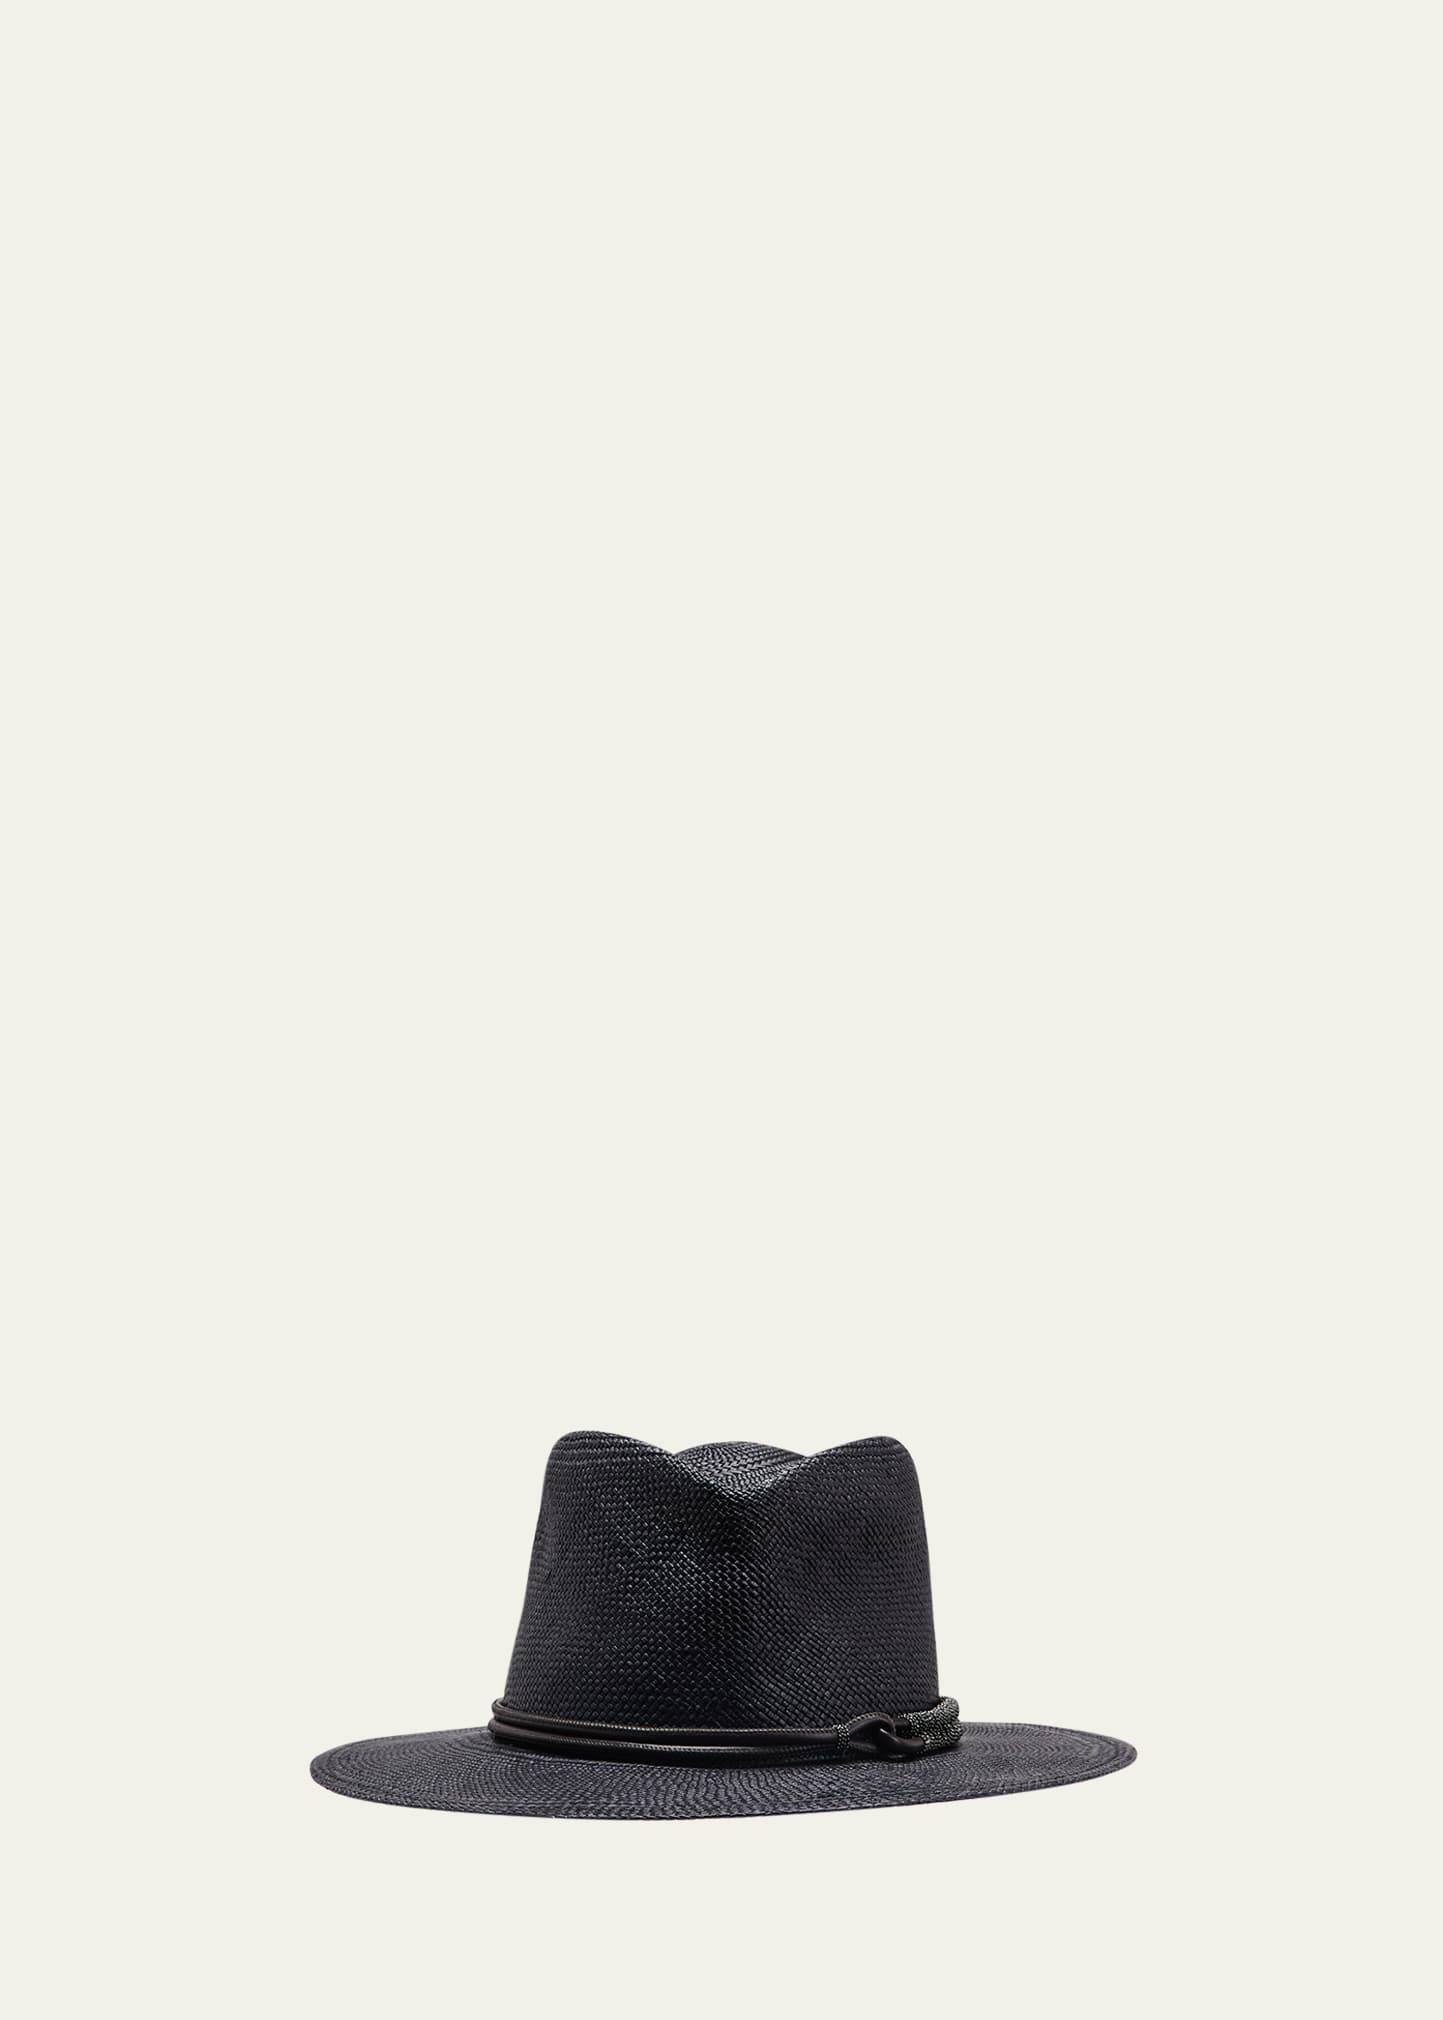 Brunello Cucinelli Straw Hat With Monili Braid Detail In Ceb32 Black